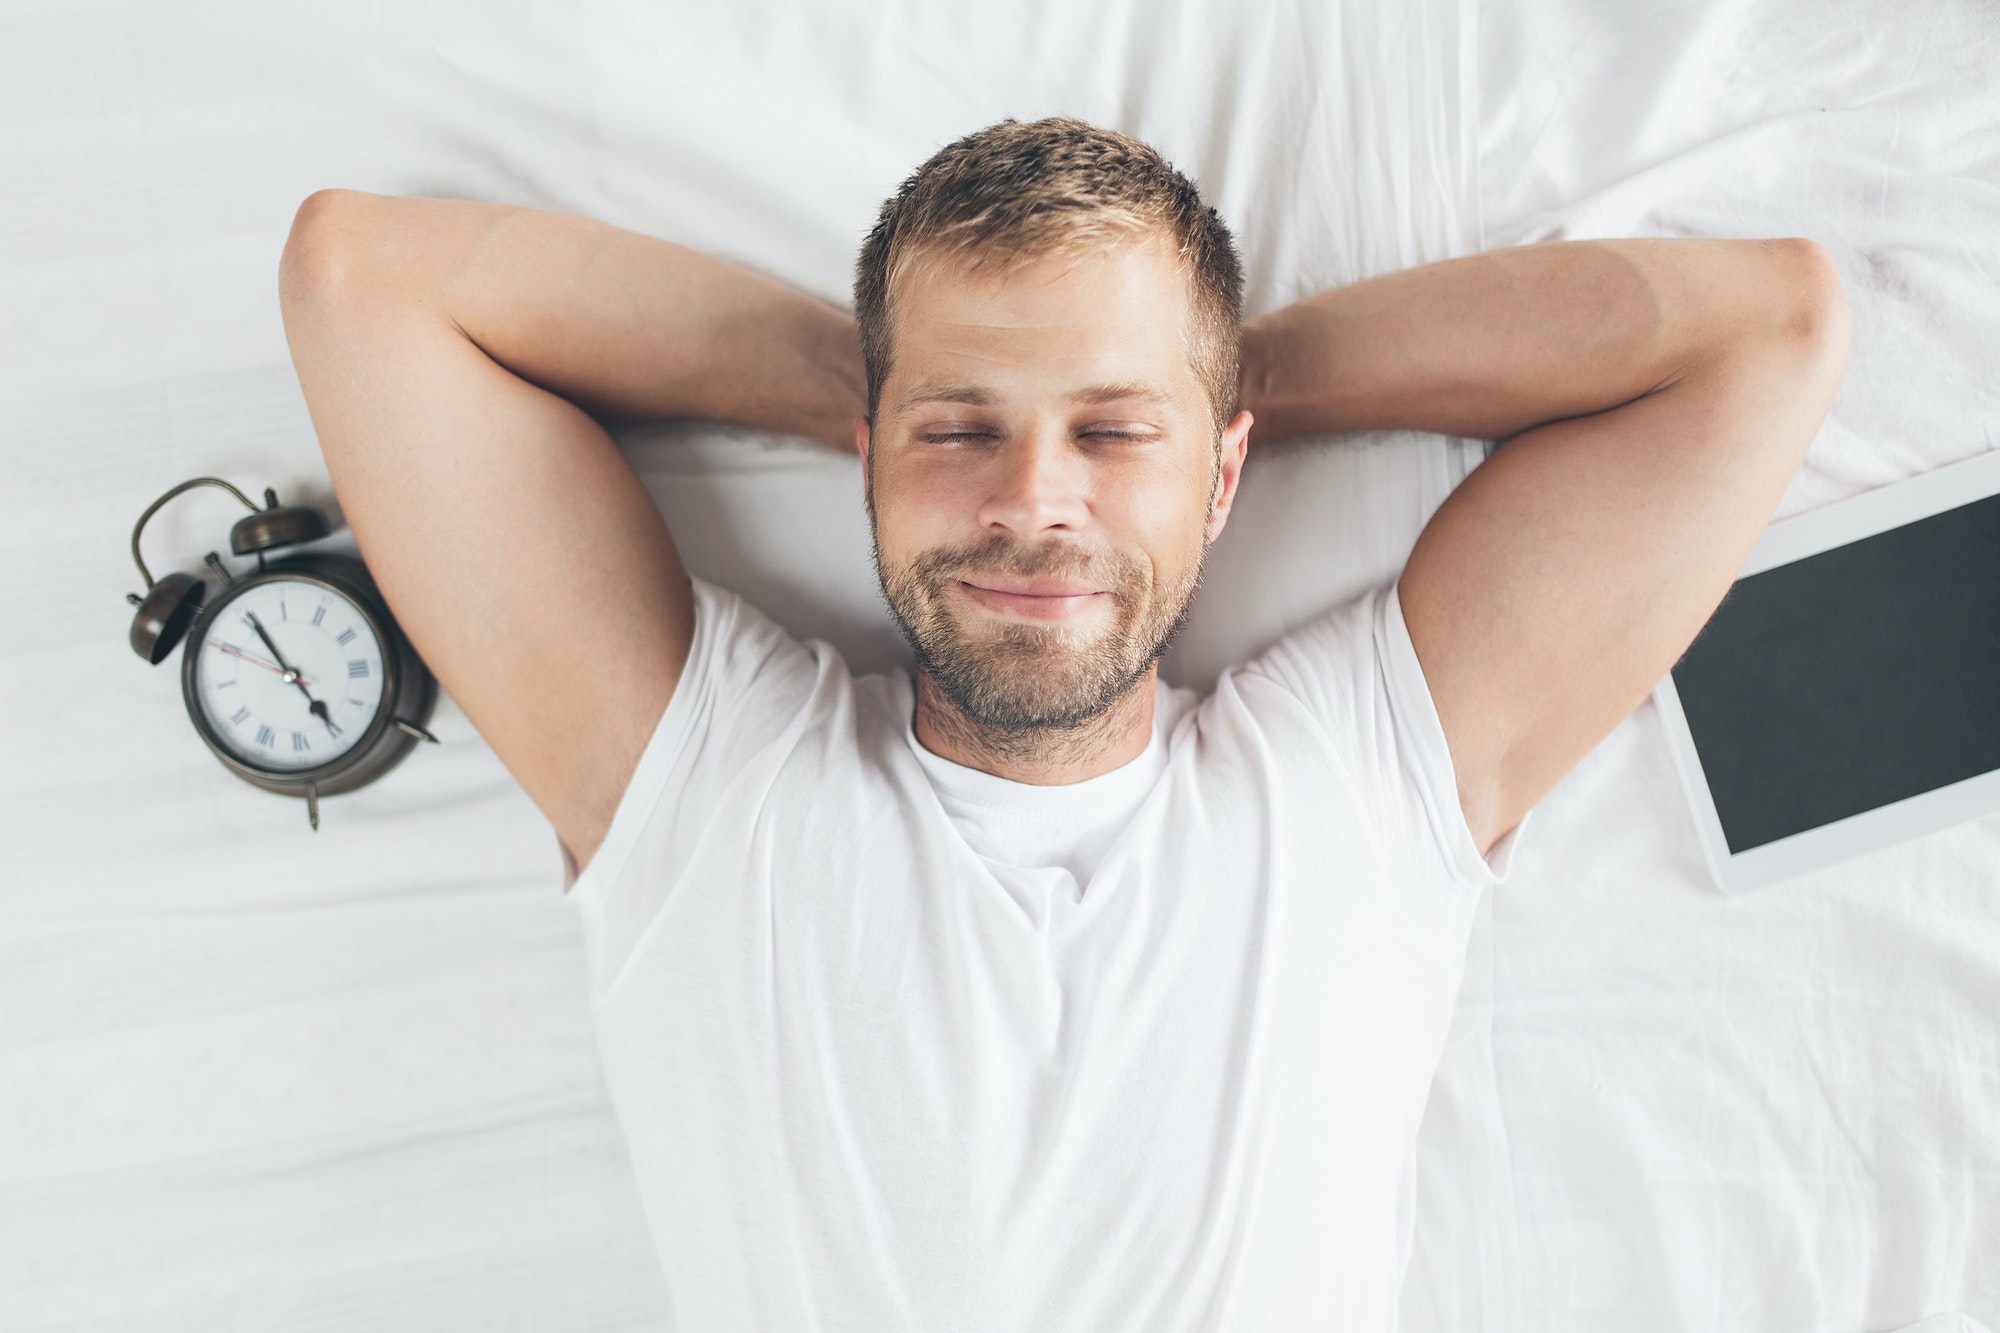 Il sonno o l’esercizio fisico è più importante?